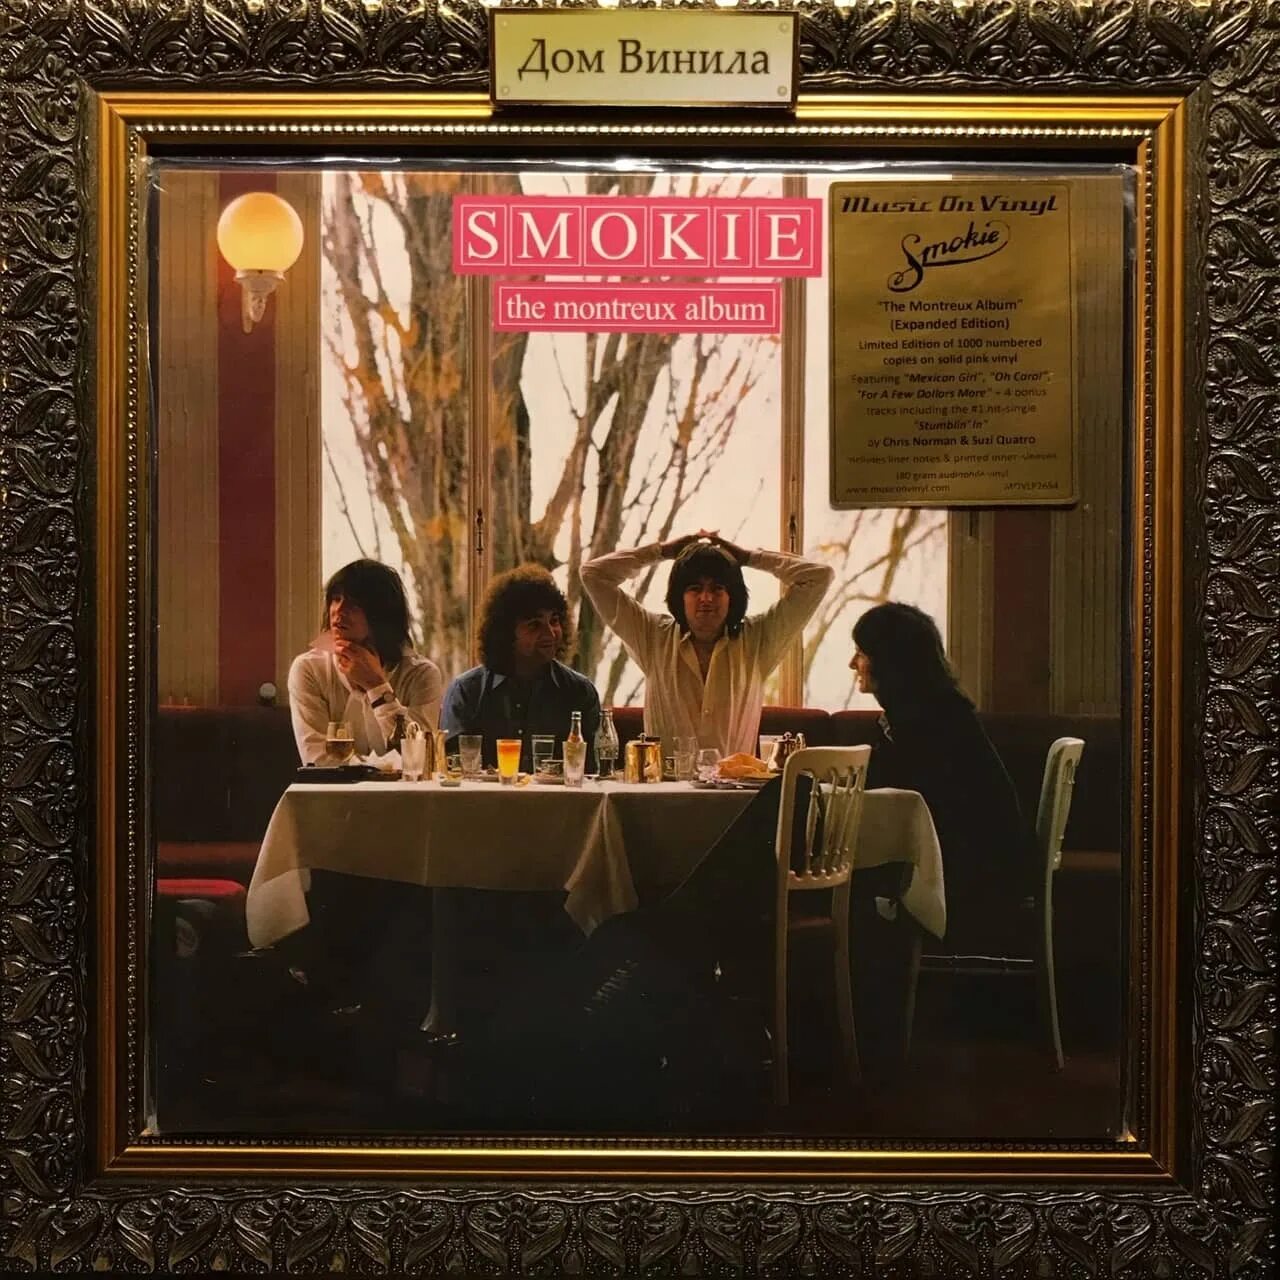 Smokie the Montreux album 1978. The Montreux album (1978). Smokie 1978 the Montreux album LP Santa. Smokie 1978 the Montreux album LP.